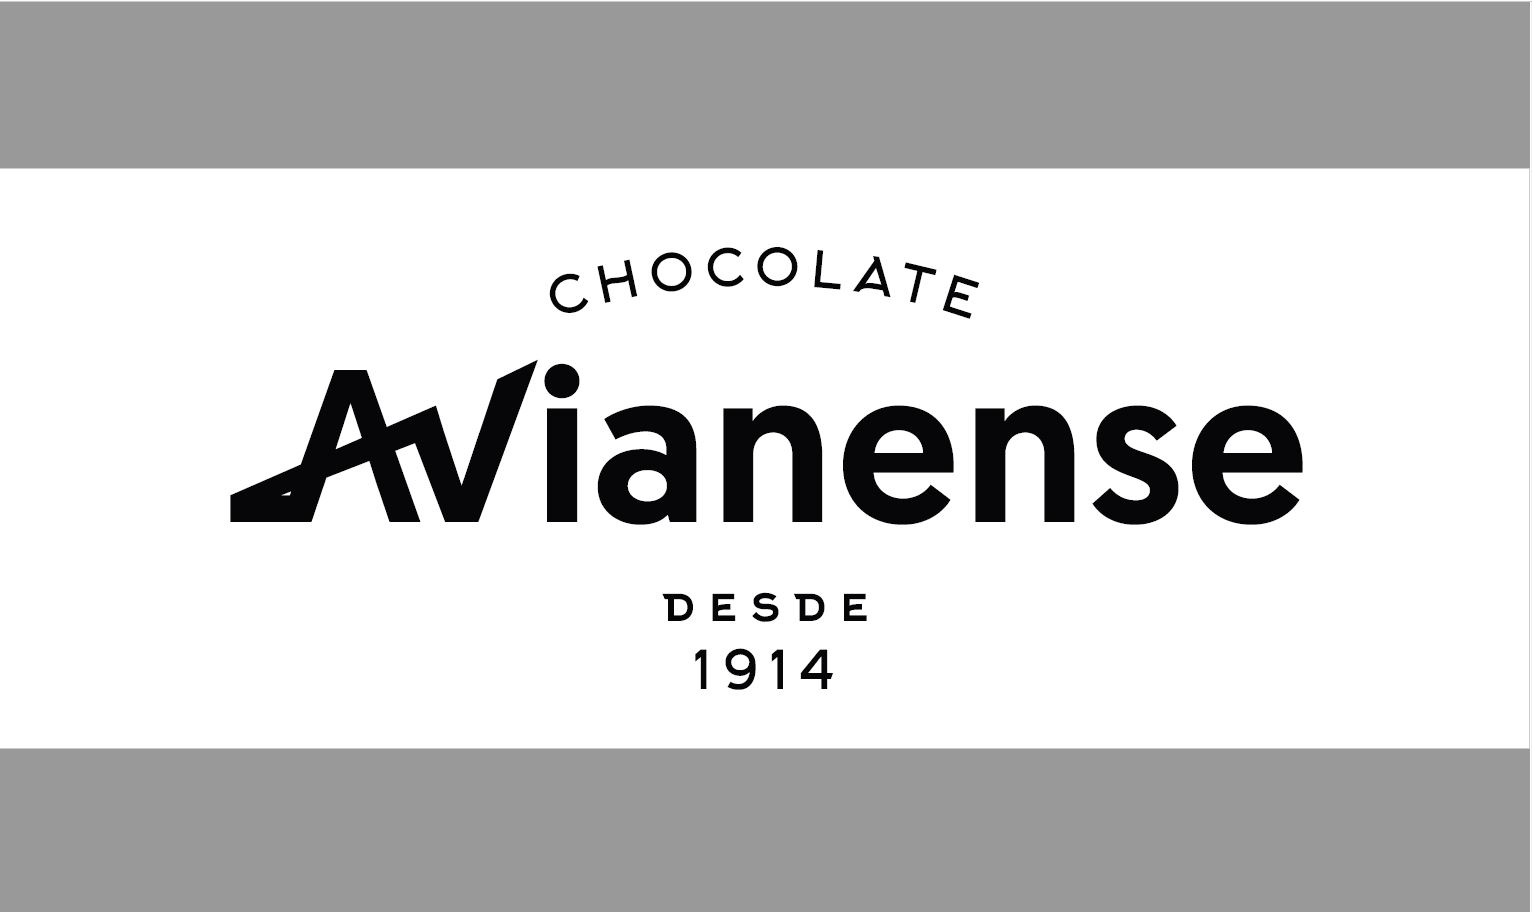 Chocolates Avianense